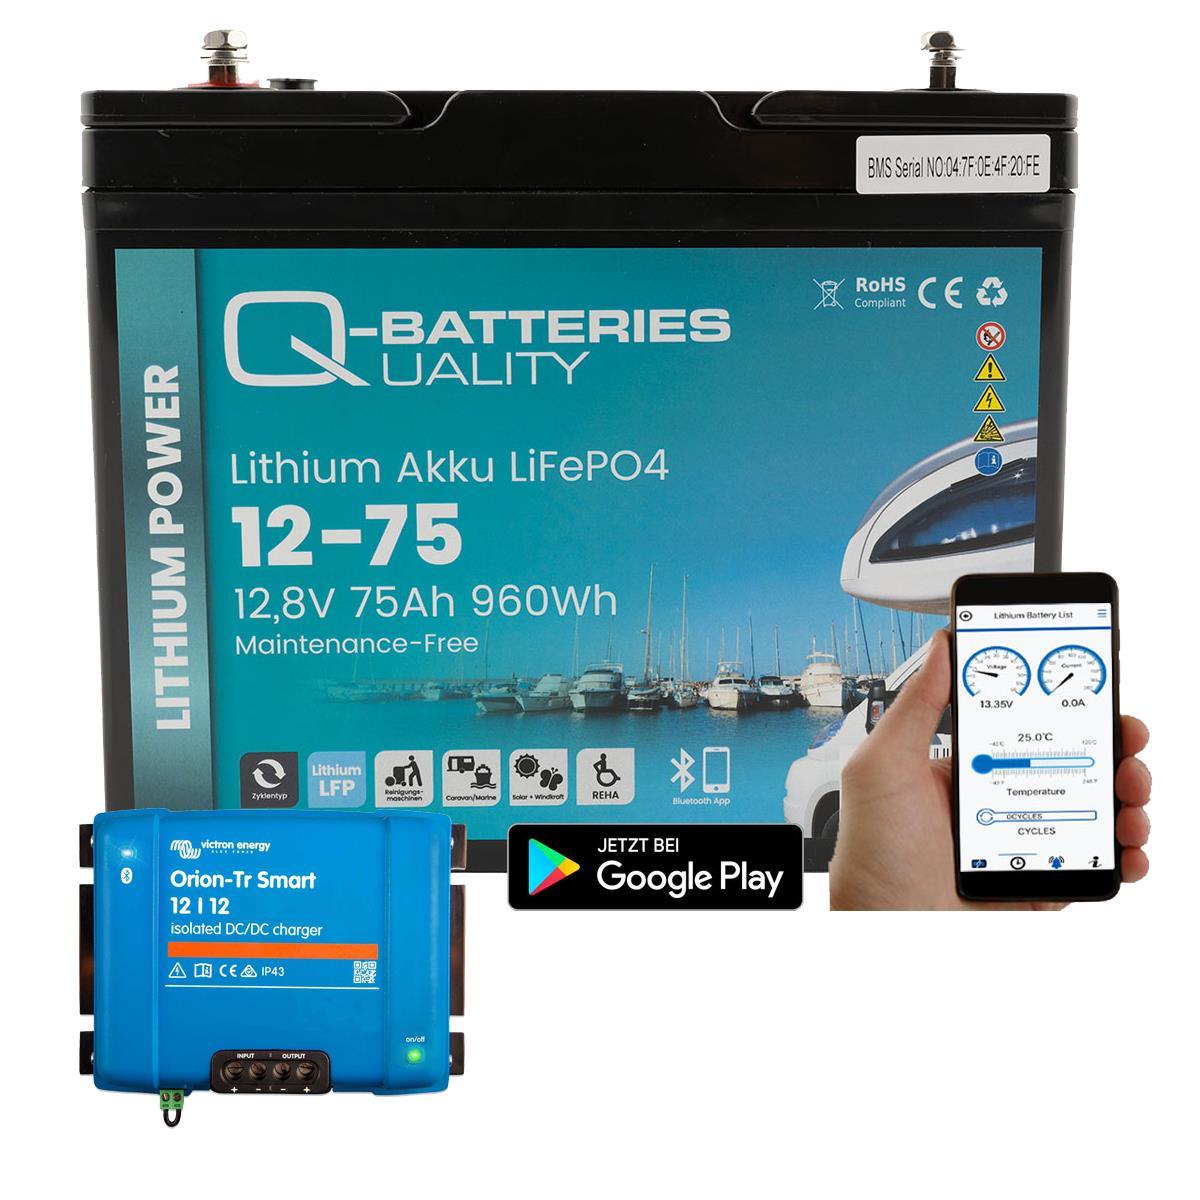 Q-Batteries Lithium Akku 12-75 12,8V 75Ah 960Wh LiFePO4 Batterie mit Victron Orion Ladegerät